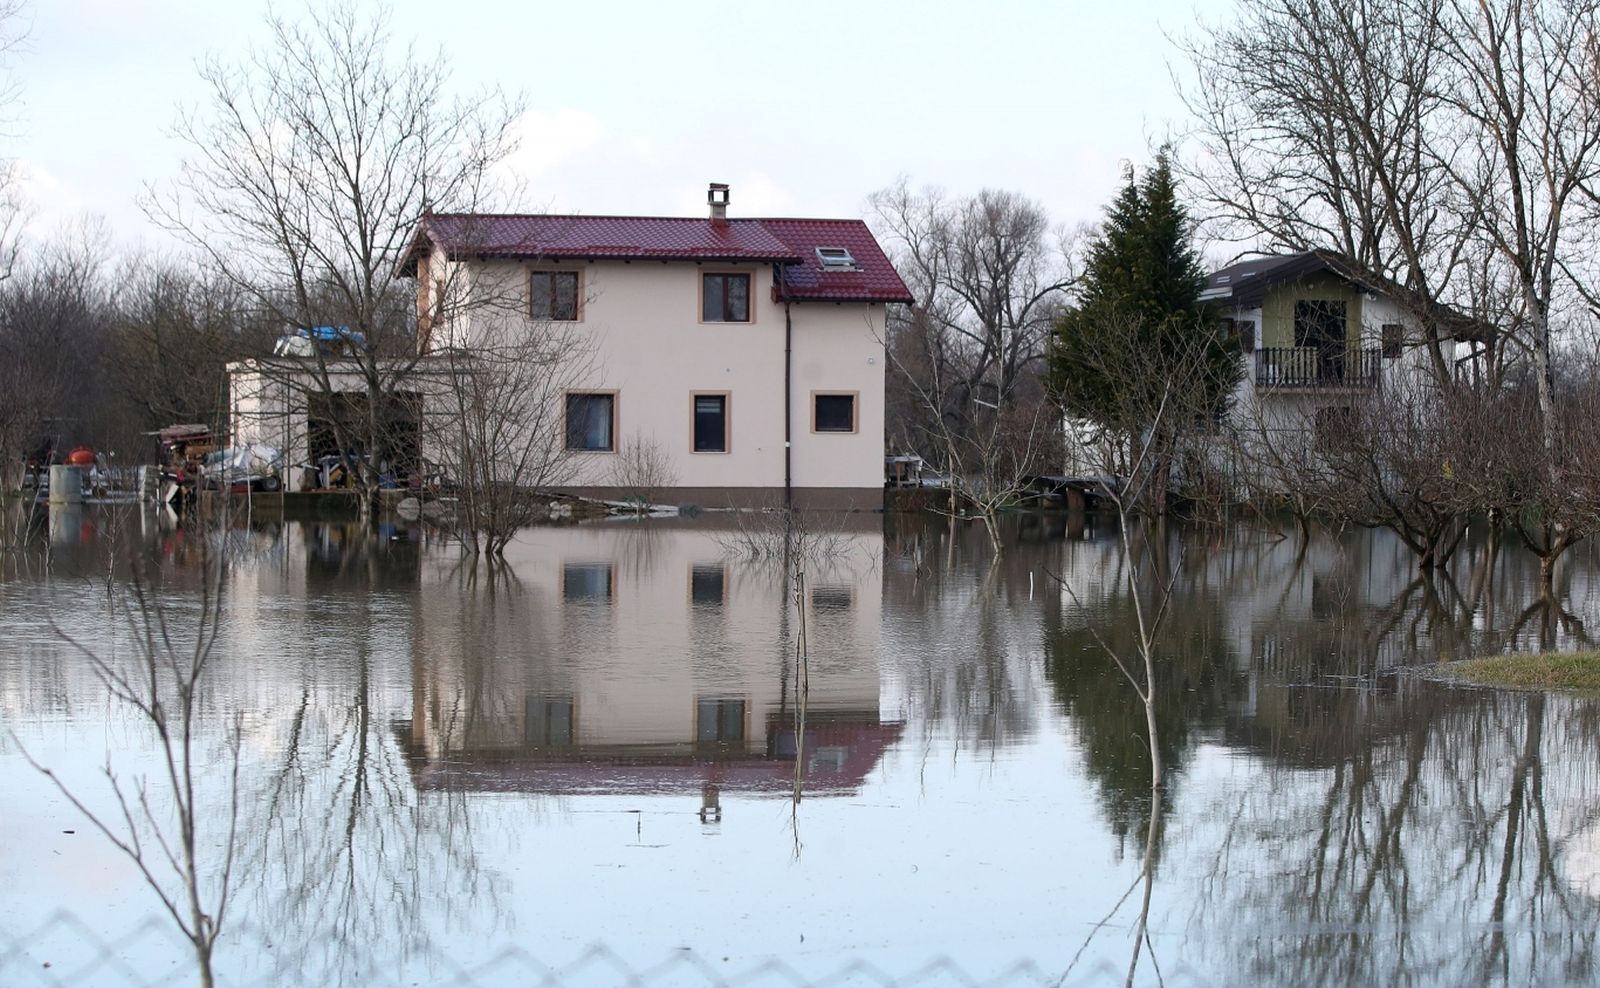 26.01.2021., Zazina - Vodostaj rijeke Kupe je u porastu te je poplavljeno nekoliko kuca u Zazini i cesti prema Maloj Gorici.
Photo: Igor Kralj/PIXSELL